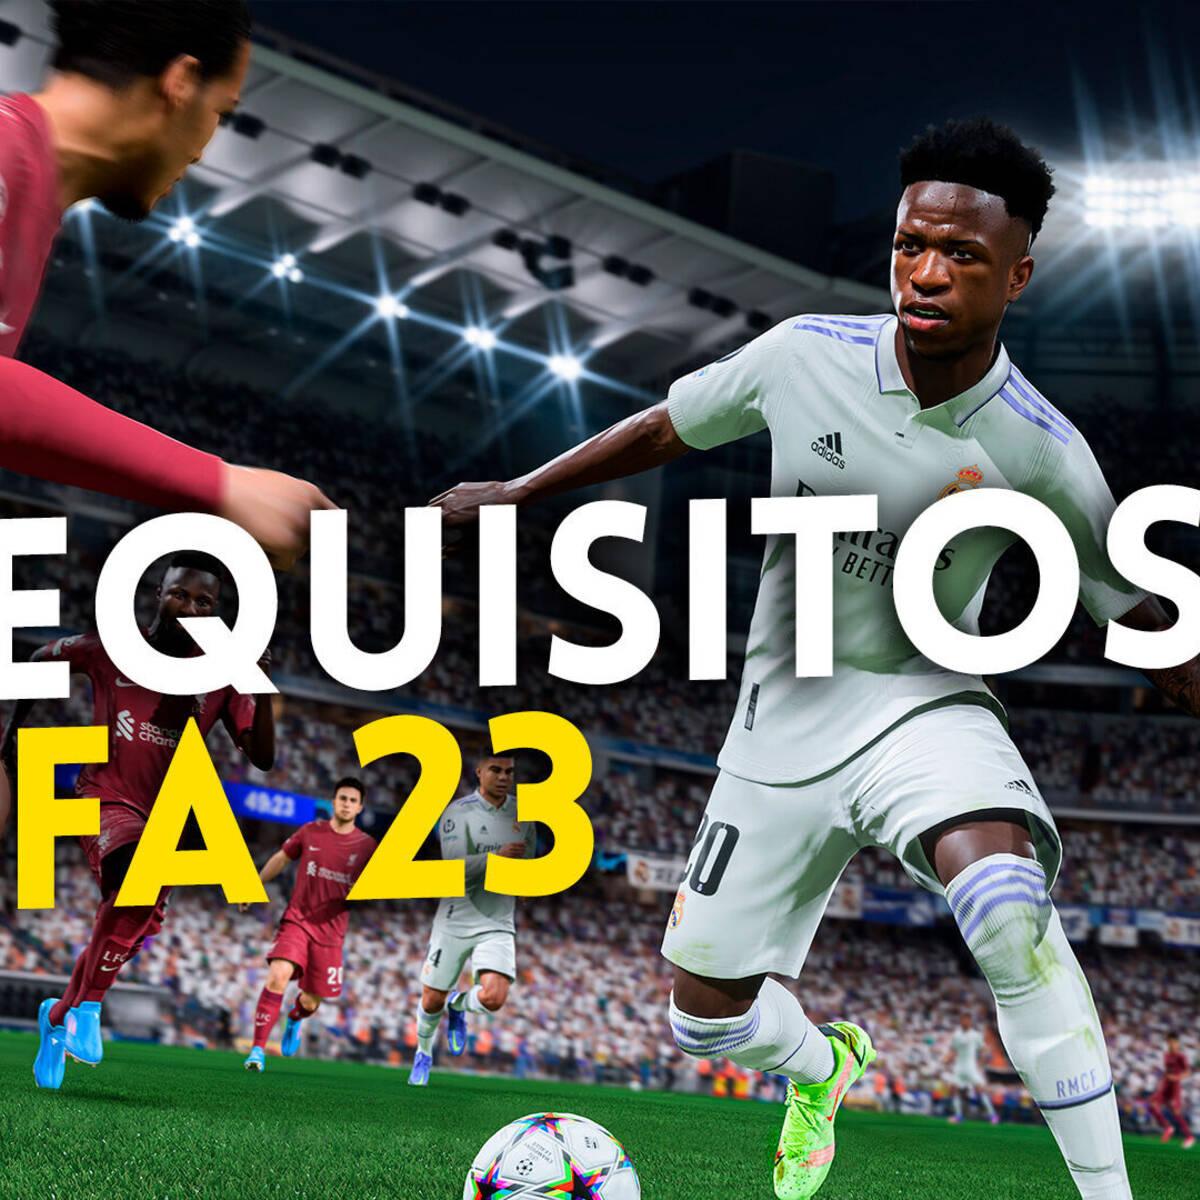 FIFA 23 anuncia sus exigentes requisitos mínimos en PC